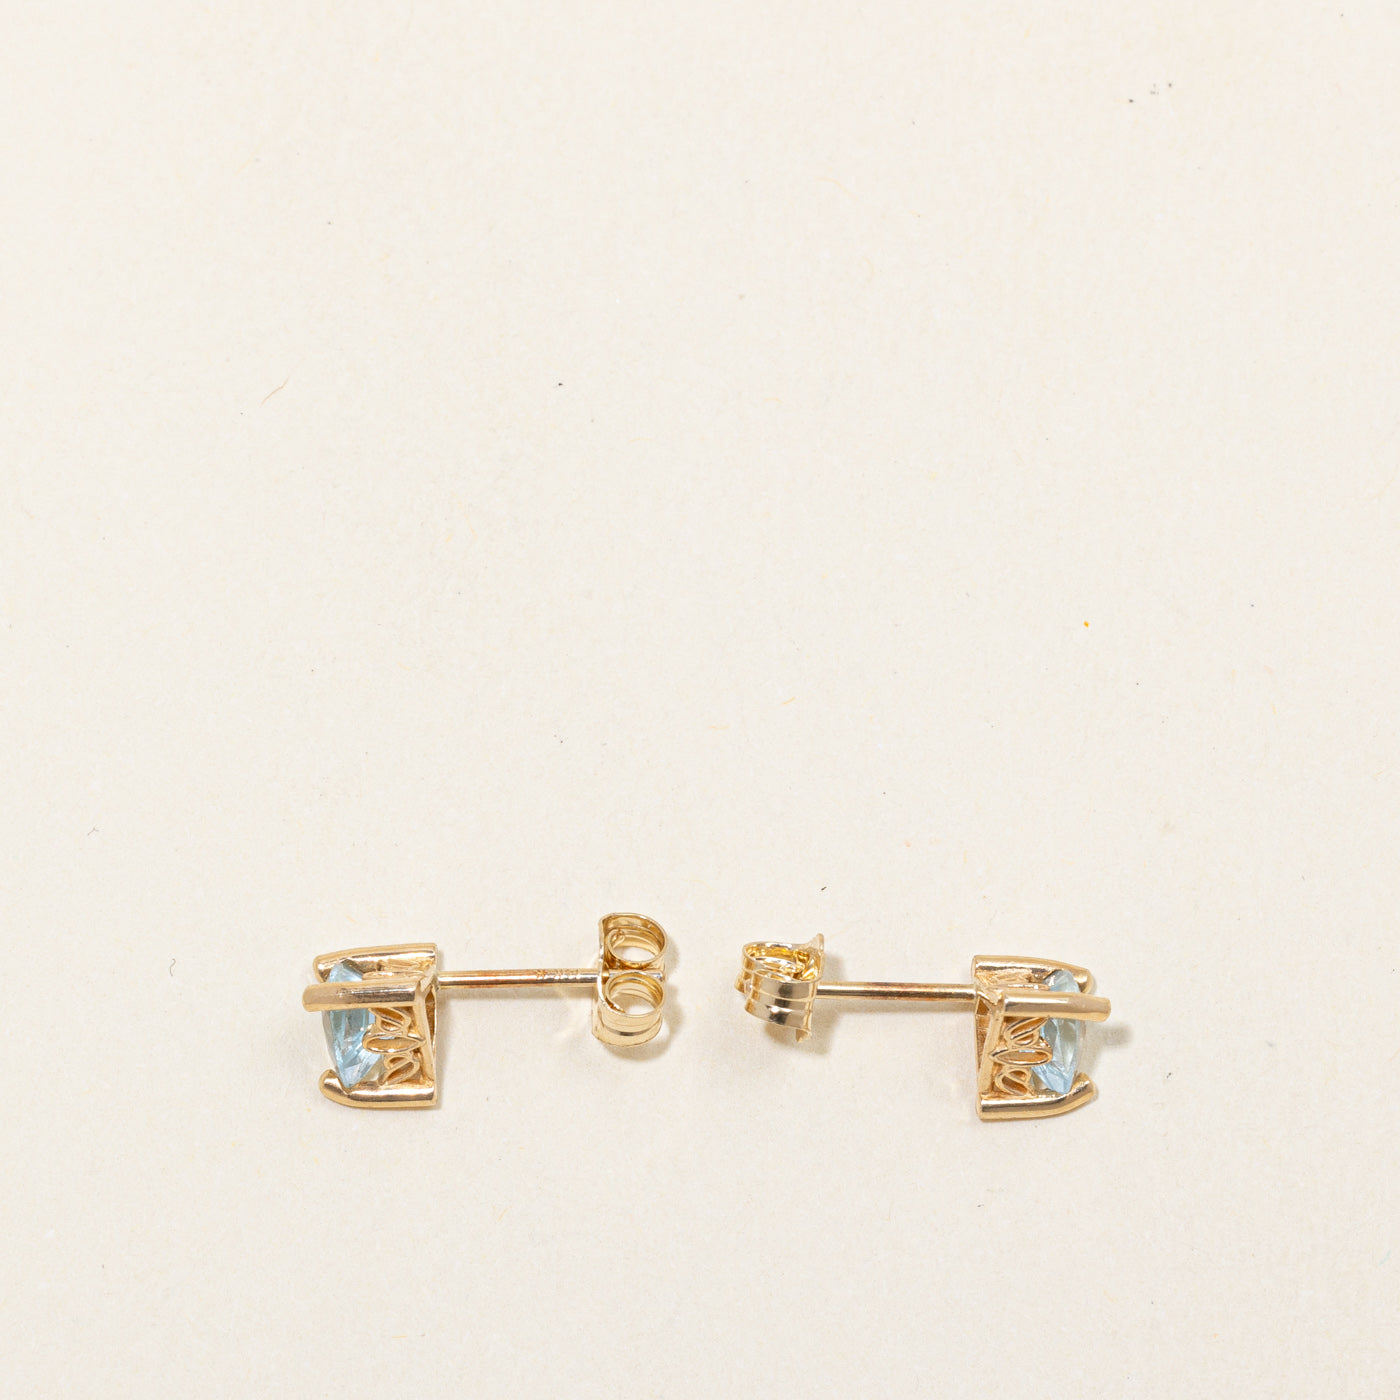 Aquamarine Stud Earrings | 0.80ctw |